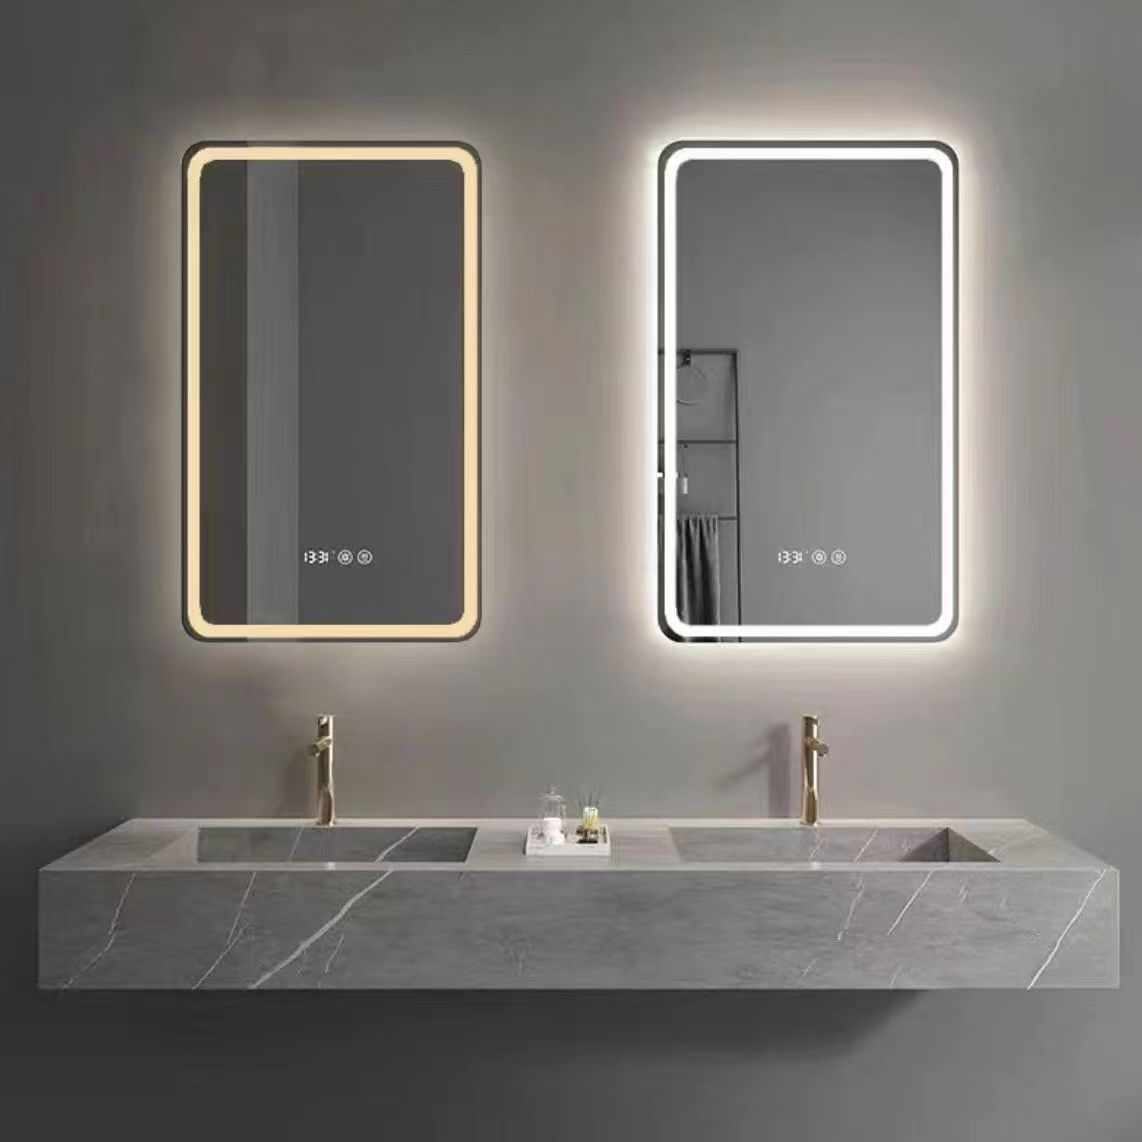 Espello do baño, espello, espello redondo, espello rectangular